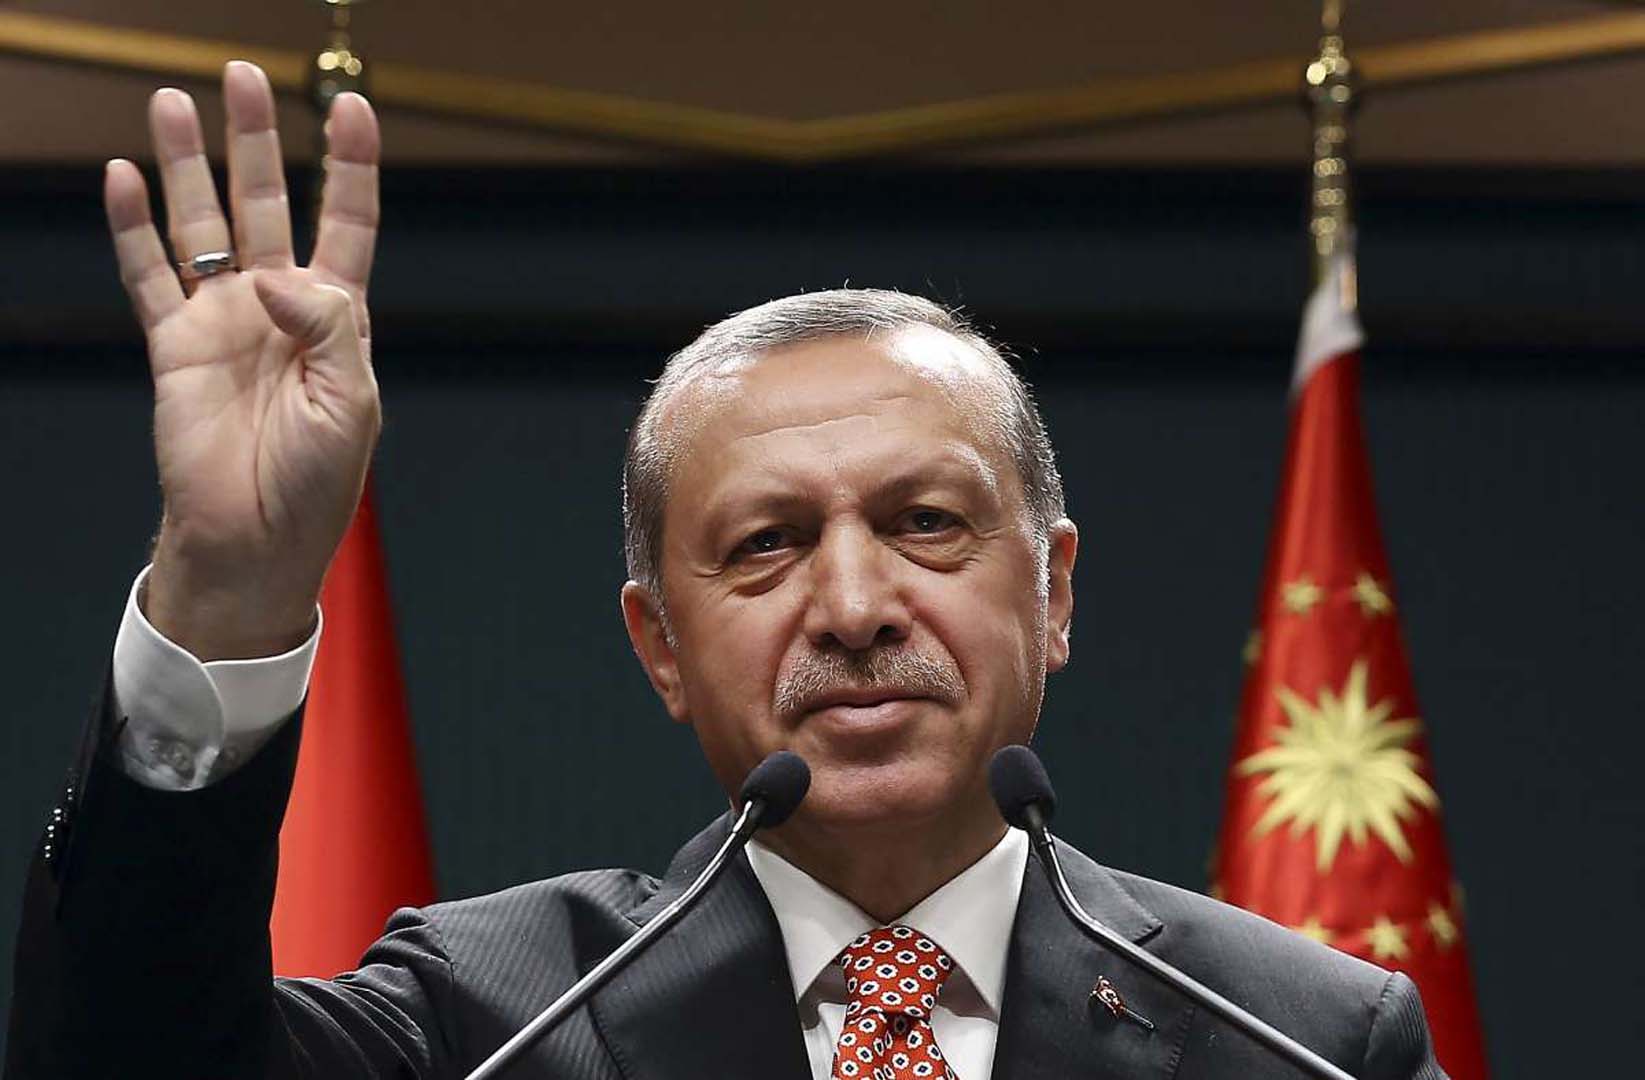 Cumhurbaşkanı Erdoğan'ın talimatı sonrası Asgari Ücret Komisyonu harekete geçti! Çarşamba güün toplanıyorlar!